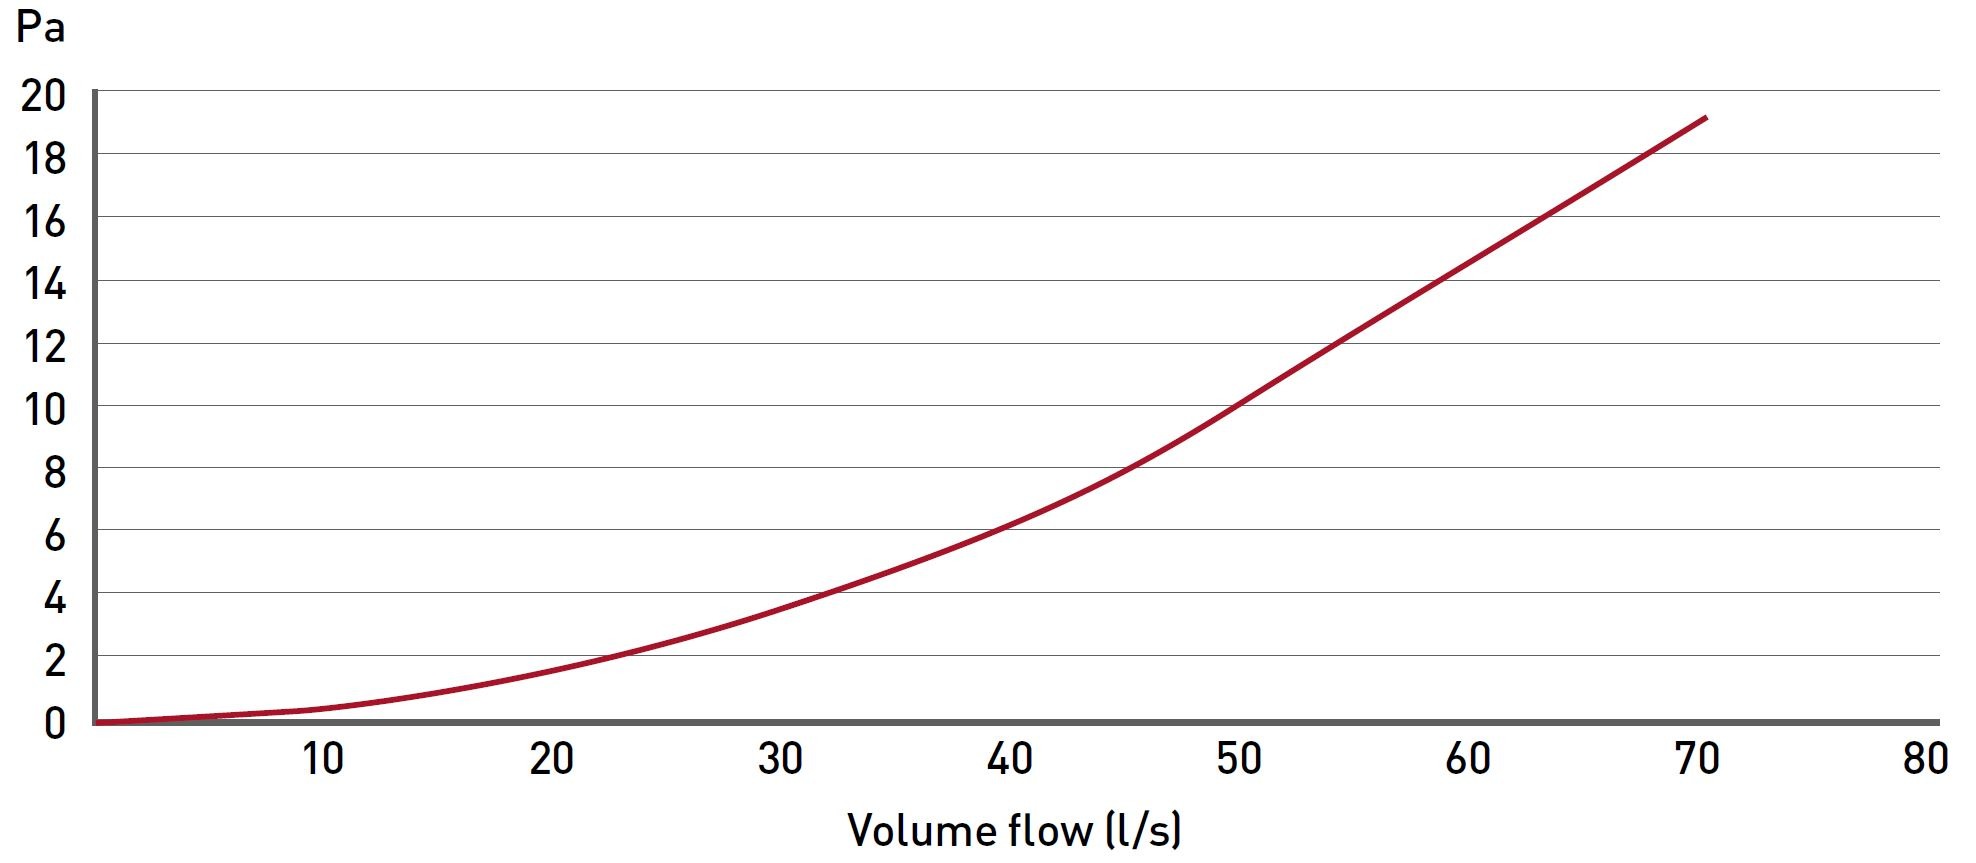 Supertube In-Line Adapter volume flow data